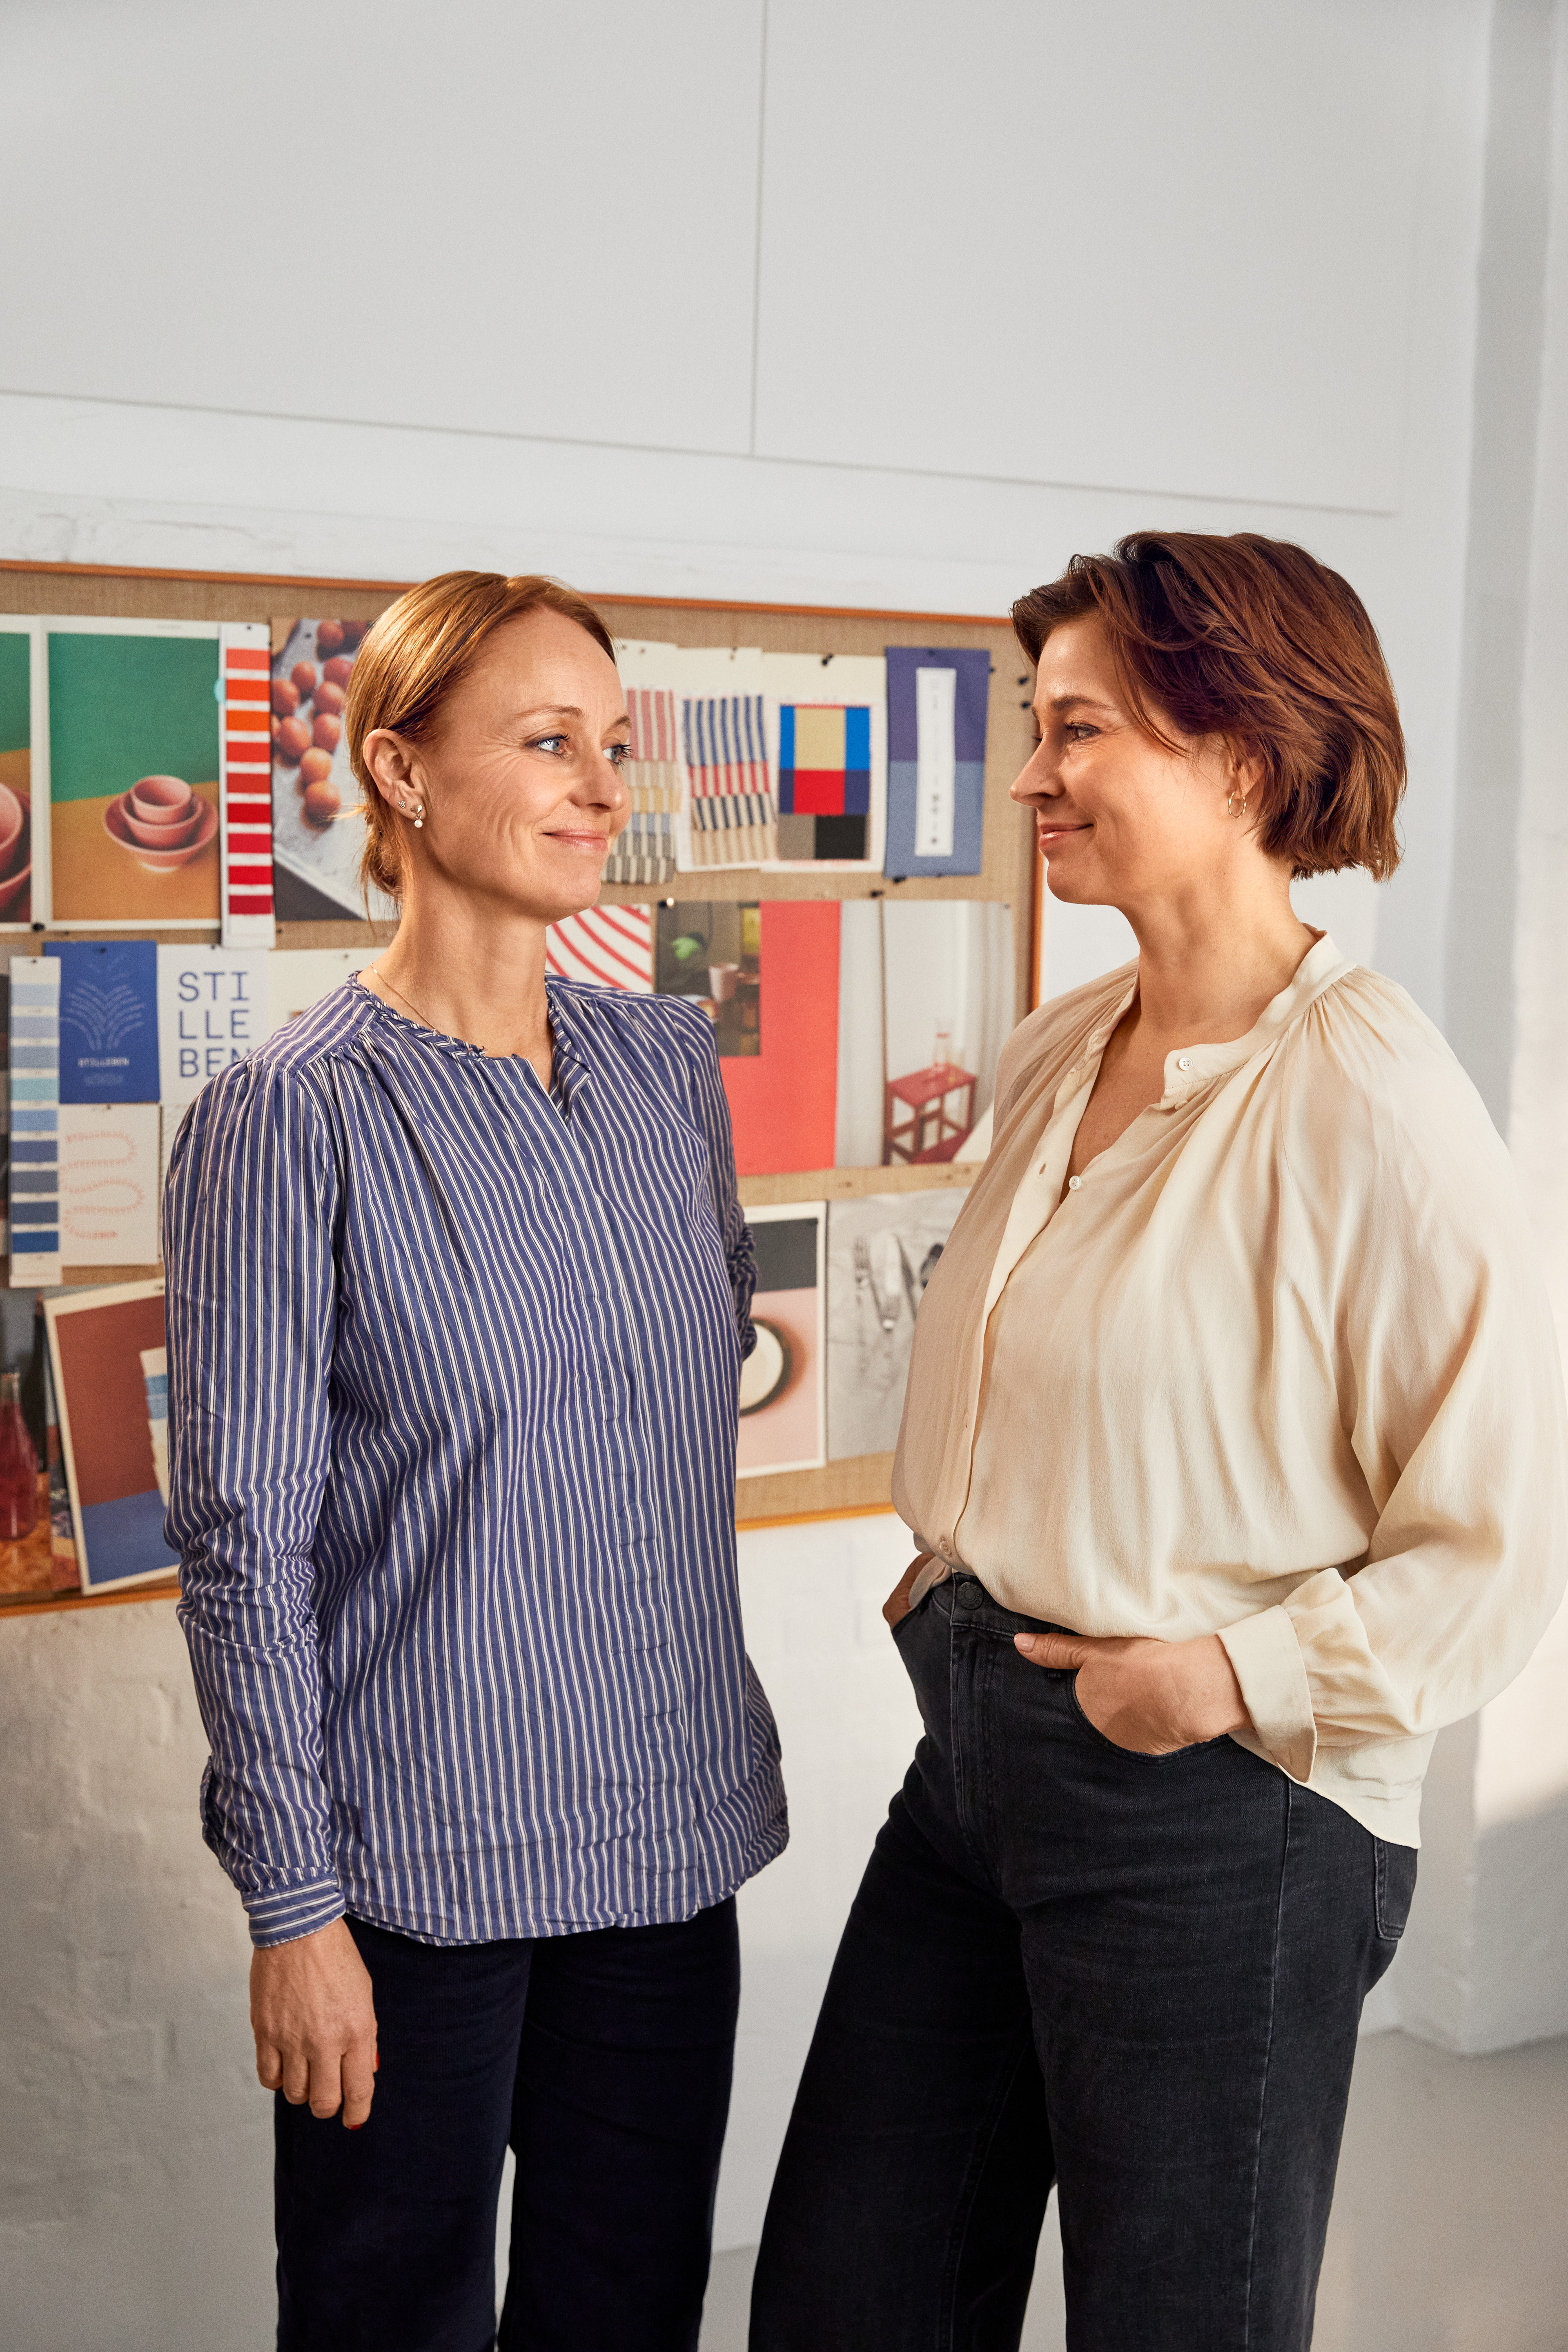 Stilleben, Ditte Reckweg & Jelena Schou Nordentoft, er designere for Lyngby Porcelæn